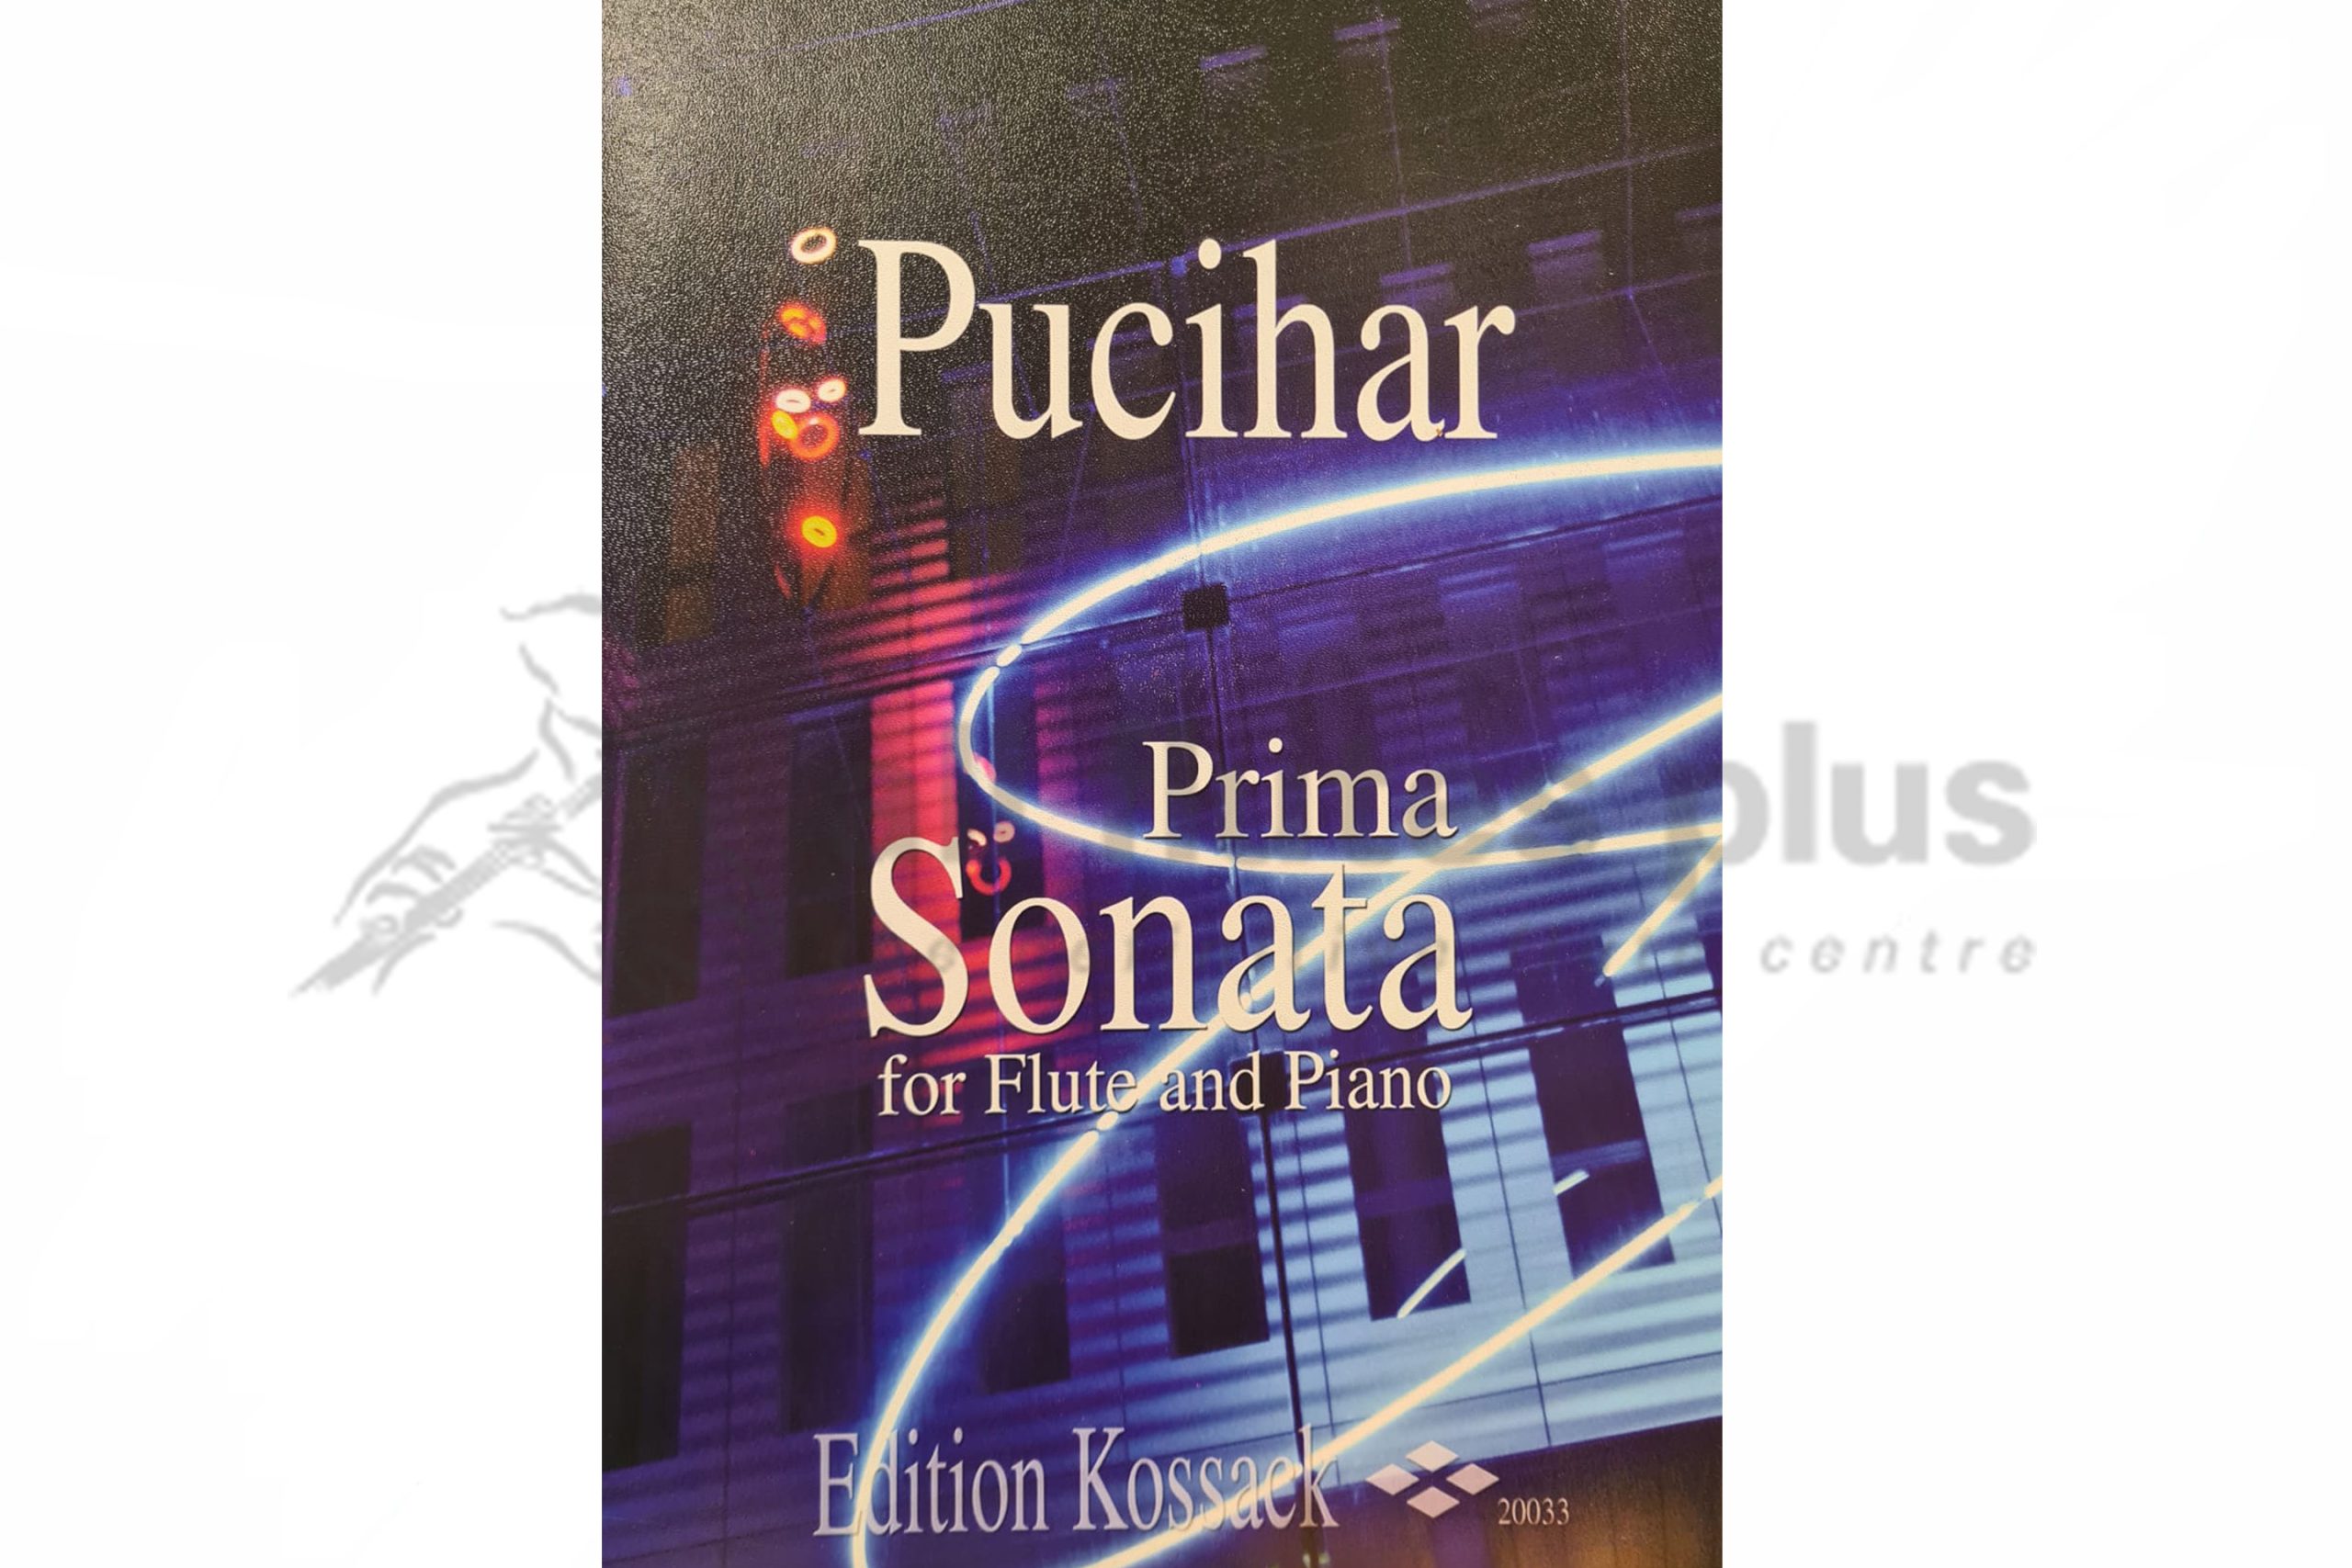 Pucihar Prima Sonata for Flute and Piano